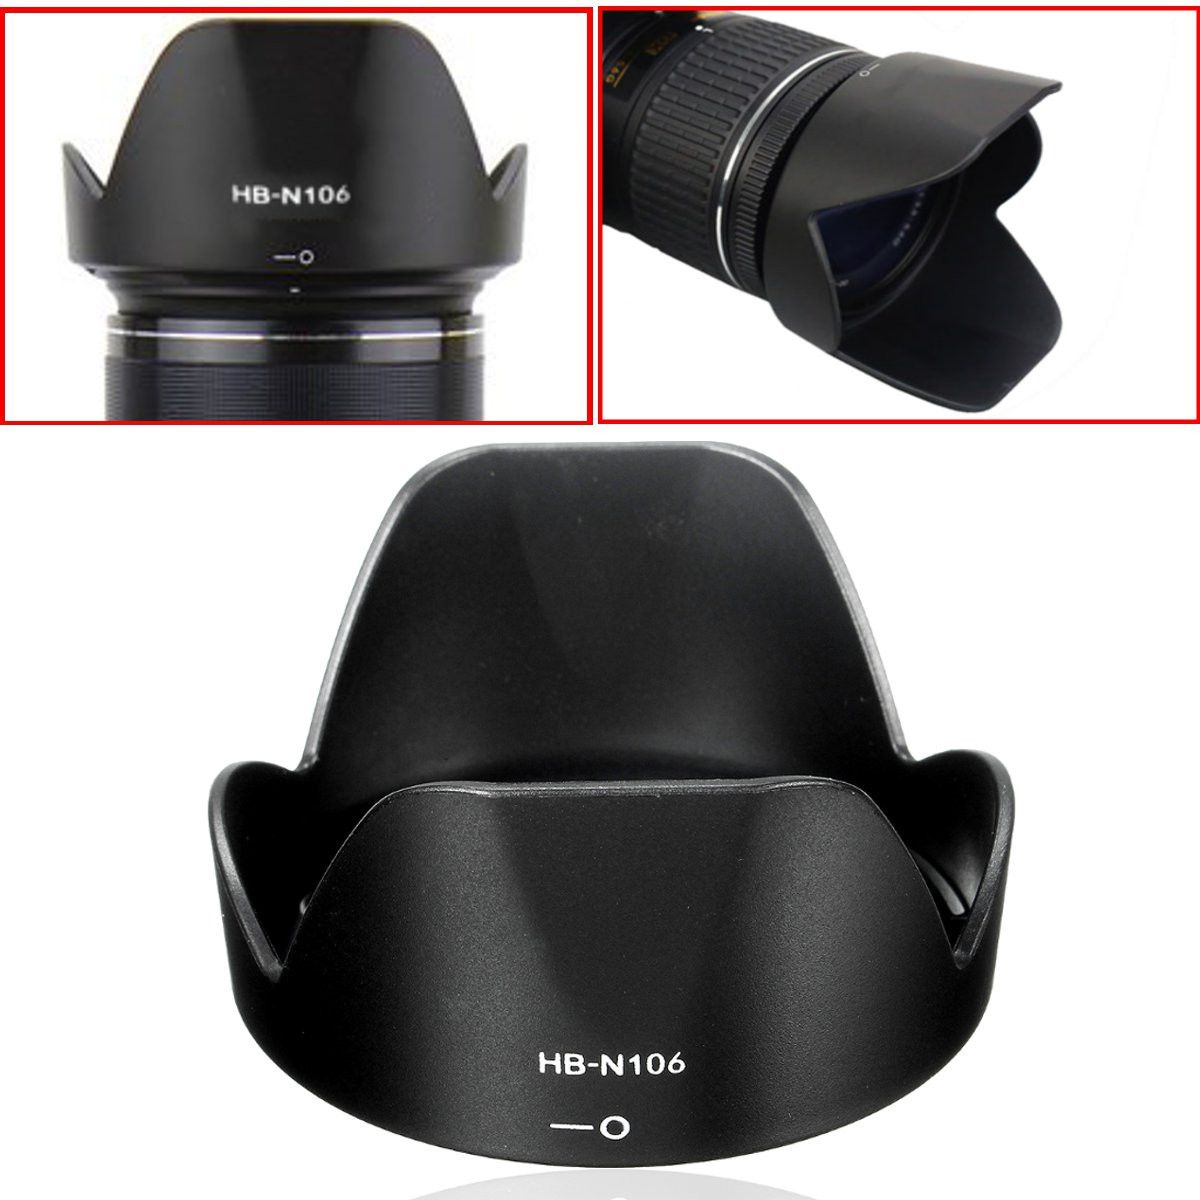 Lens-Hood-for-Nikon-HB-N106-18-55-D3300-Lens-D5300-AF-P-Accessories-10-100mm-1108280